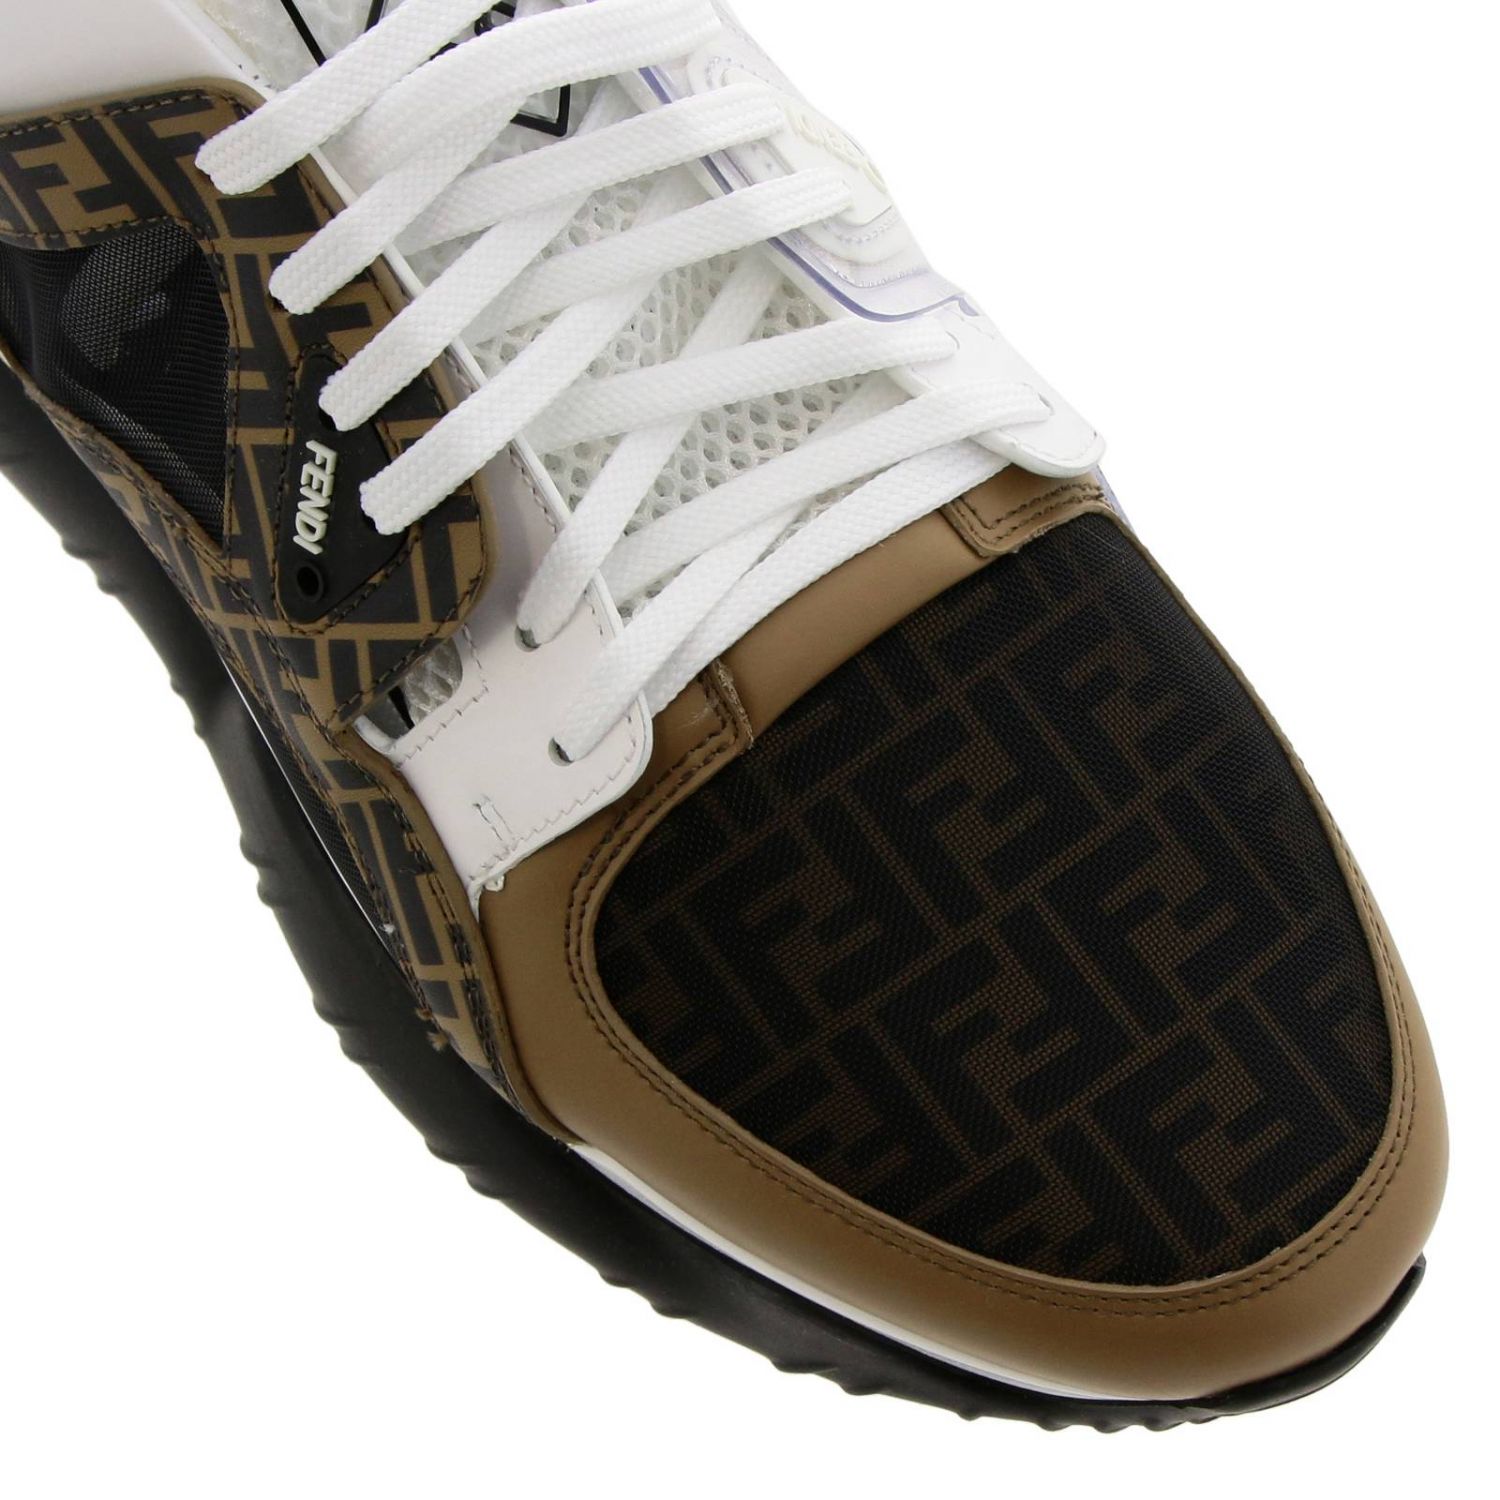 FENDI: Shoes men | Sneakers Fendi Men White | Sneakers Fendi 7E1217 ...